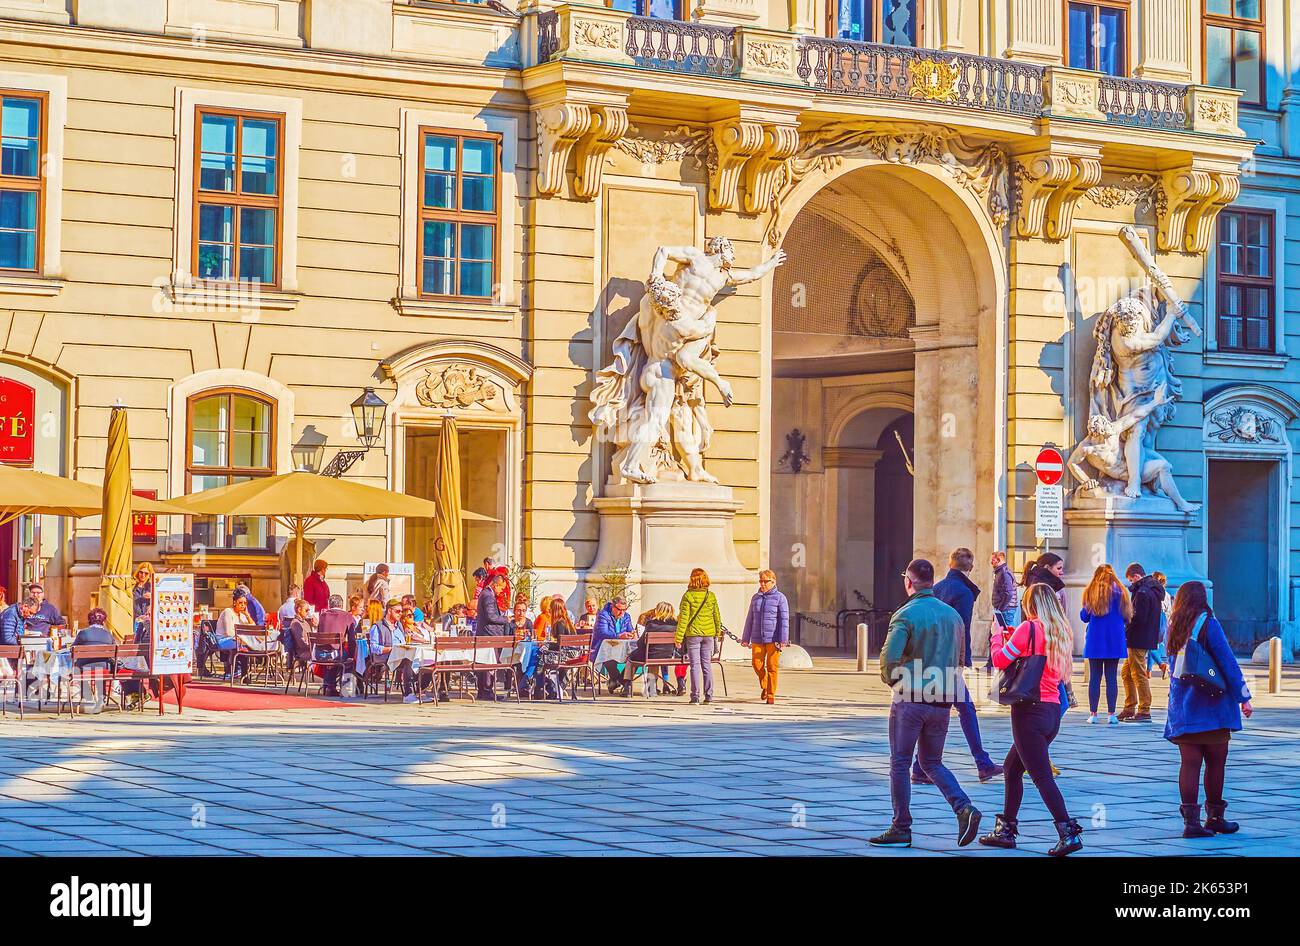 VIENA, AUSTRIA - 17 DE FEBRERO de 2019: Disfrute de un café al aire libre en la plaza Innere Burgplatz del Palacio Hofburg, el 17 de febrero en Viena, Austria Foto de stock